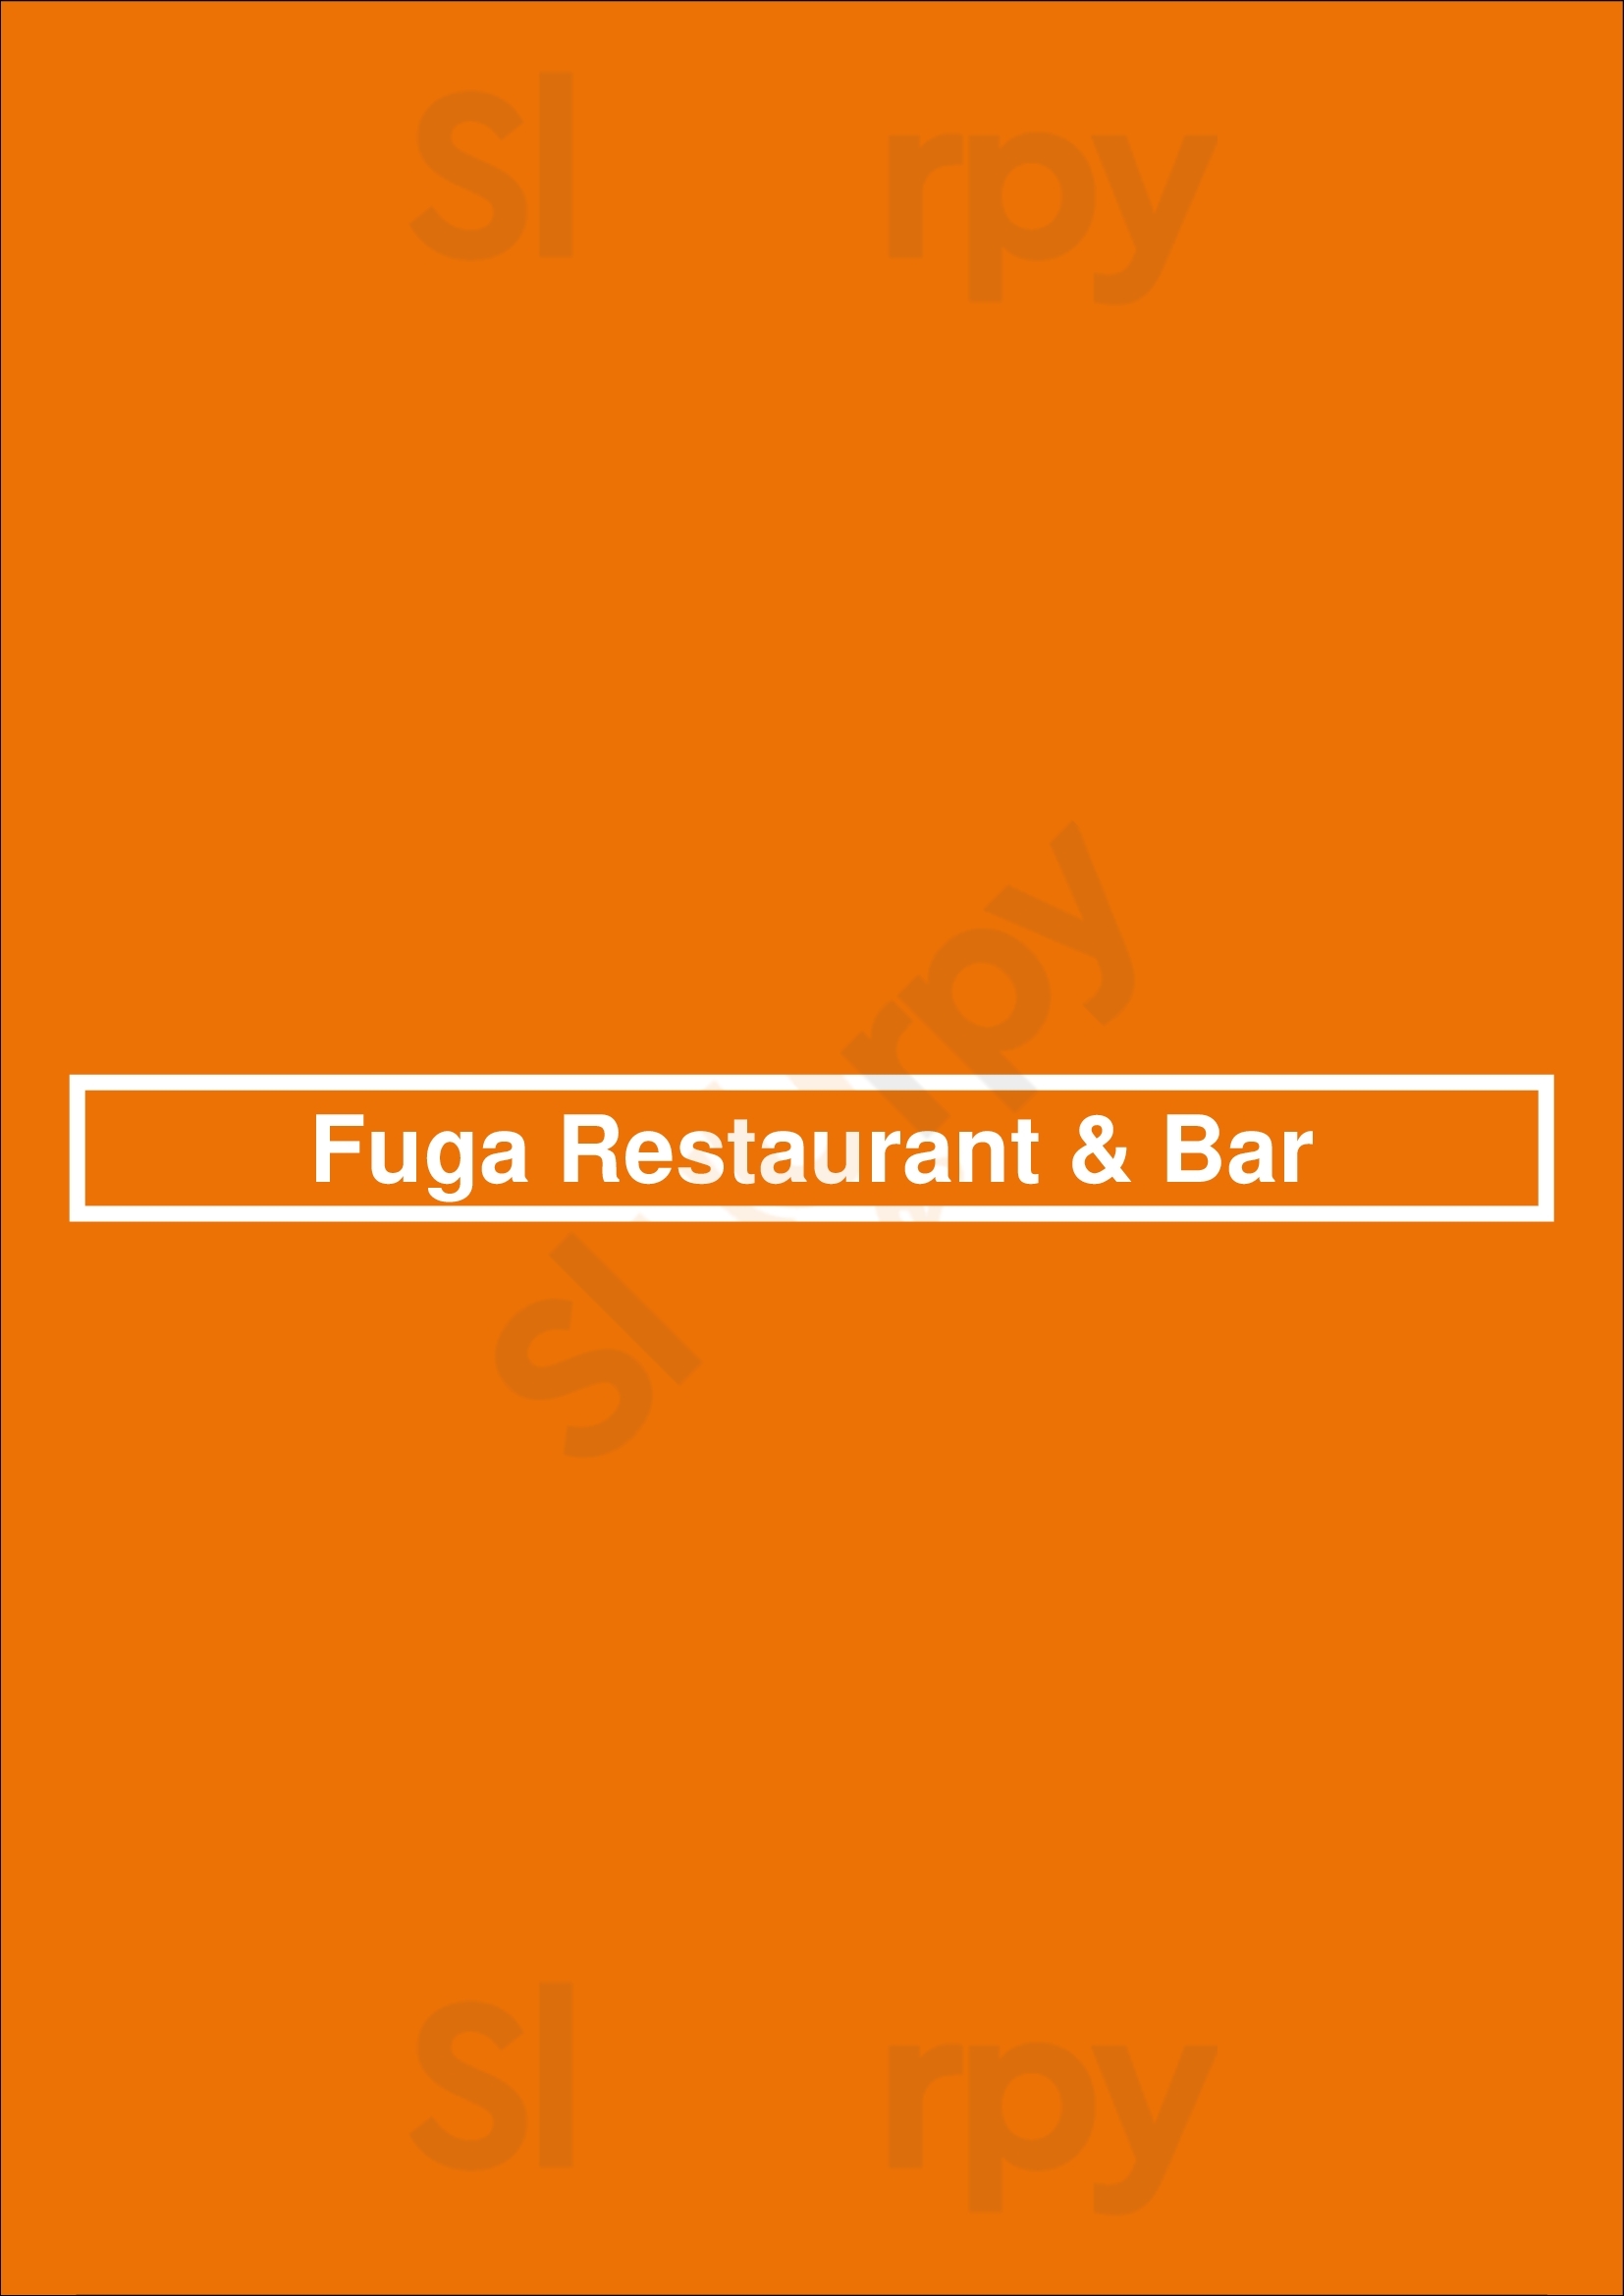 Fuga Restaurant & Bar Porto Menu - 1